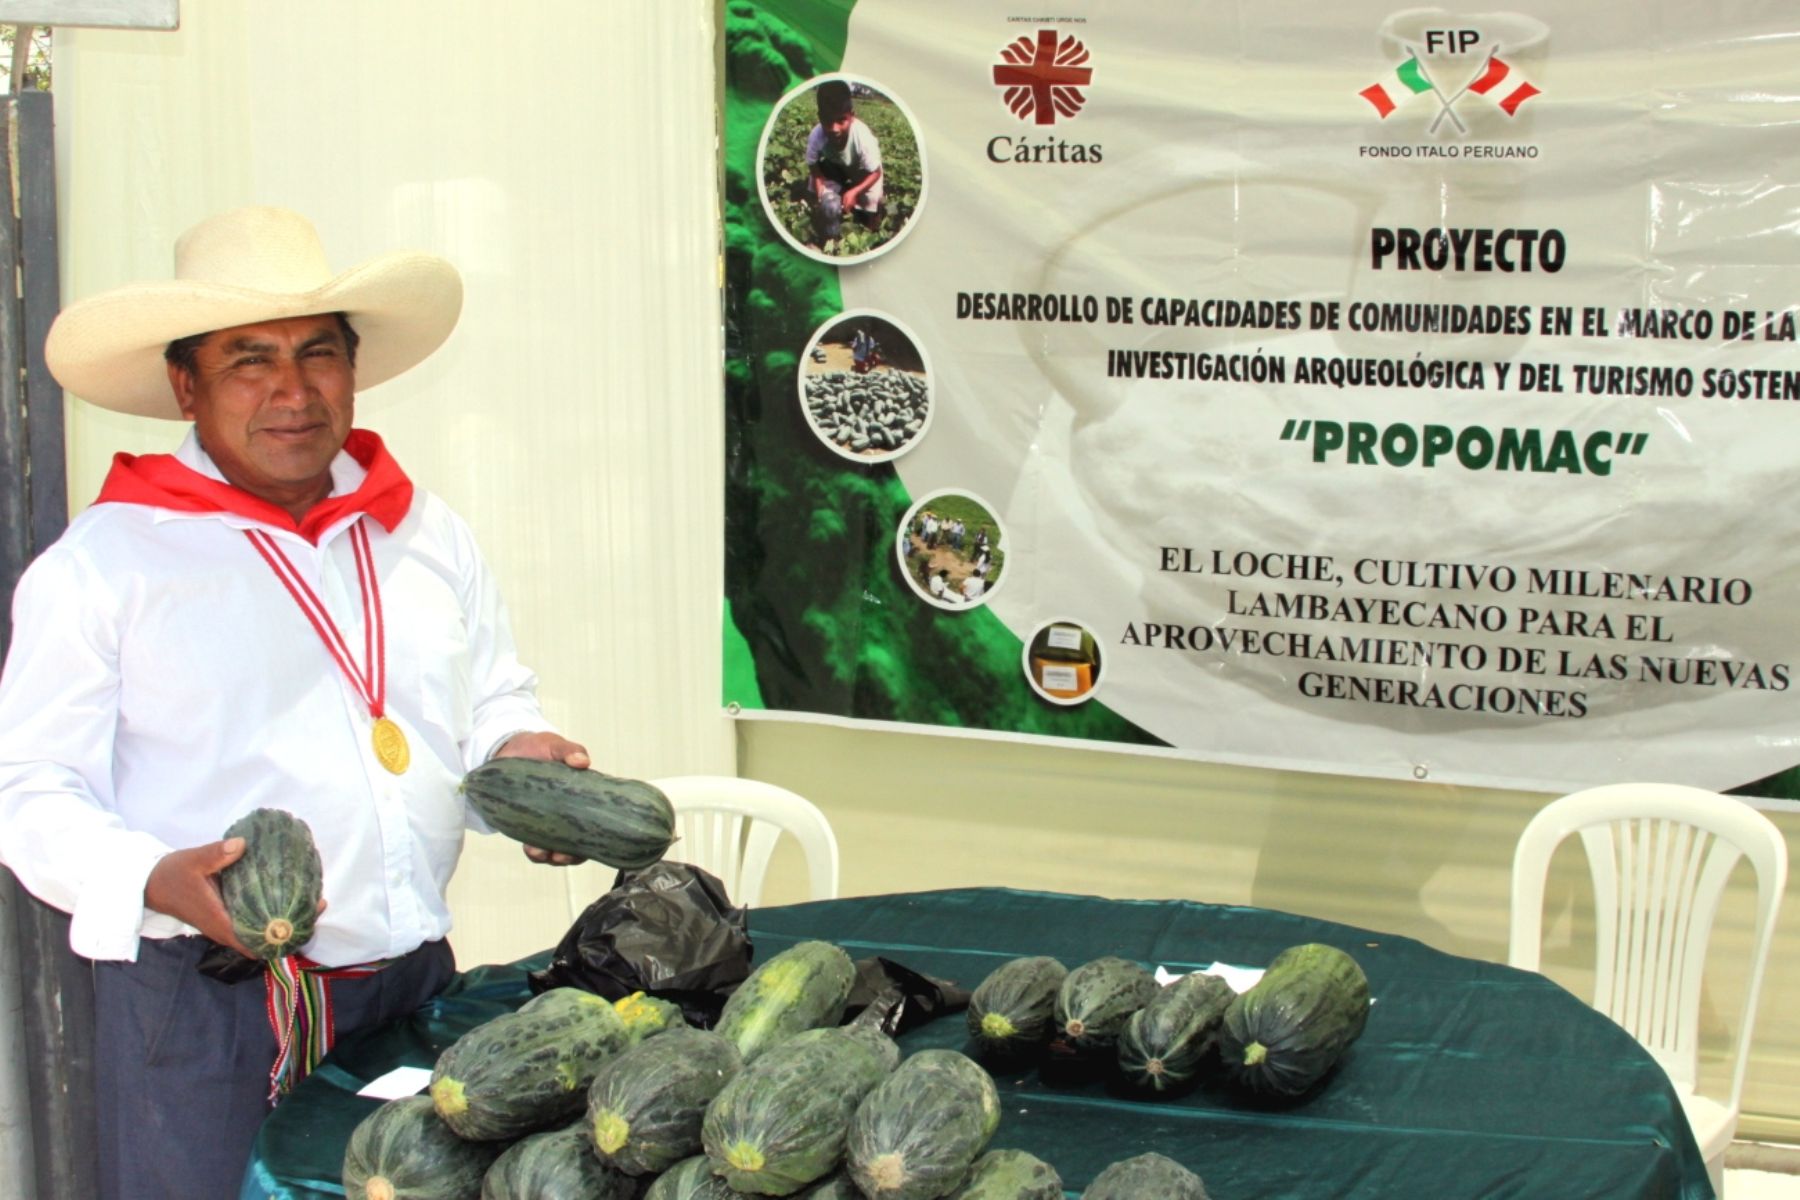 El loche lambayecano fue el insumo principal de diversos potajes. Foto: Andina/Gobierno regional de Lambayeque.